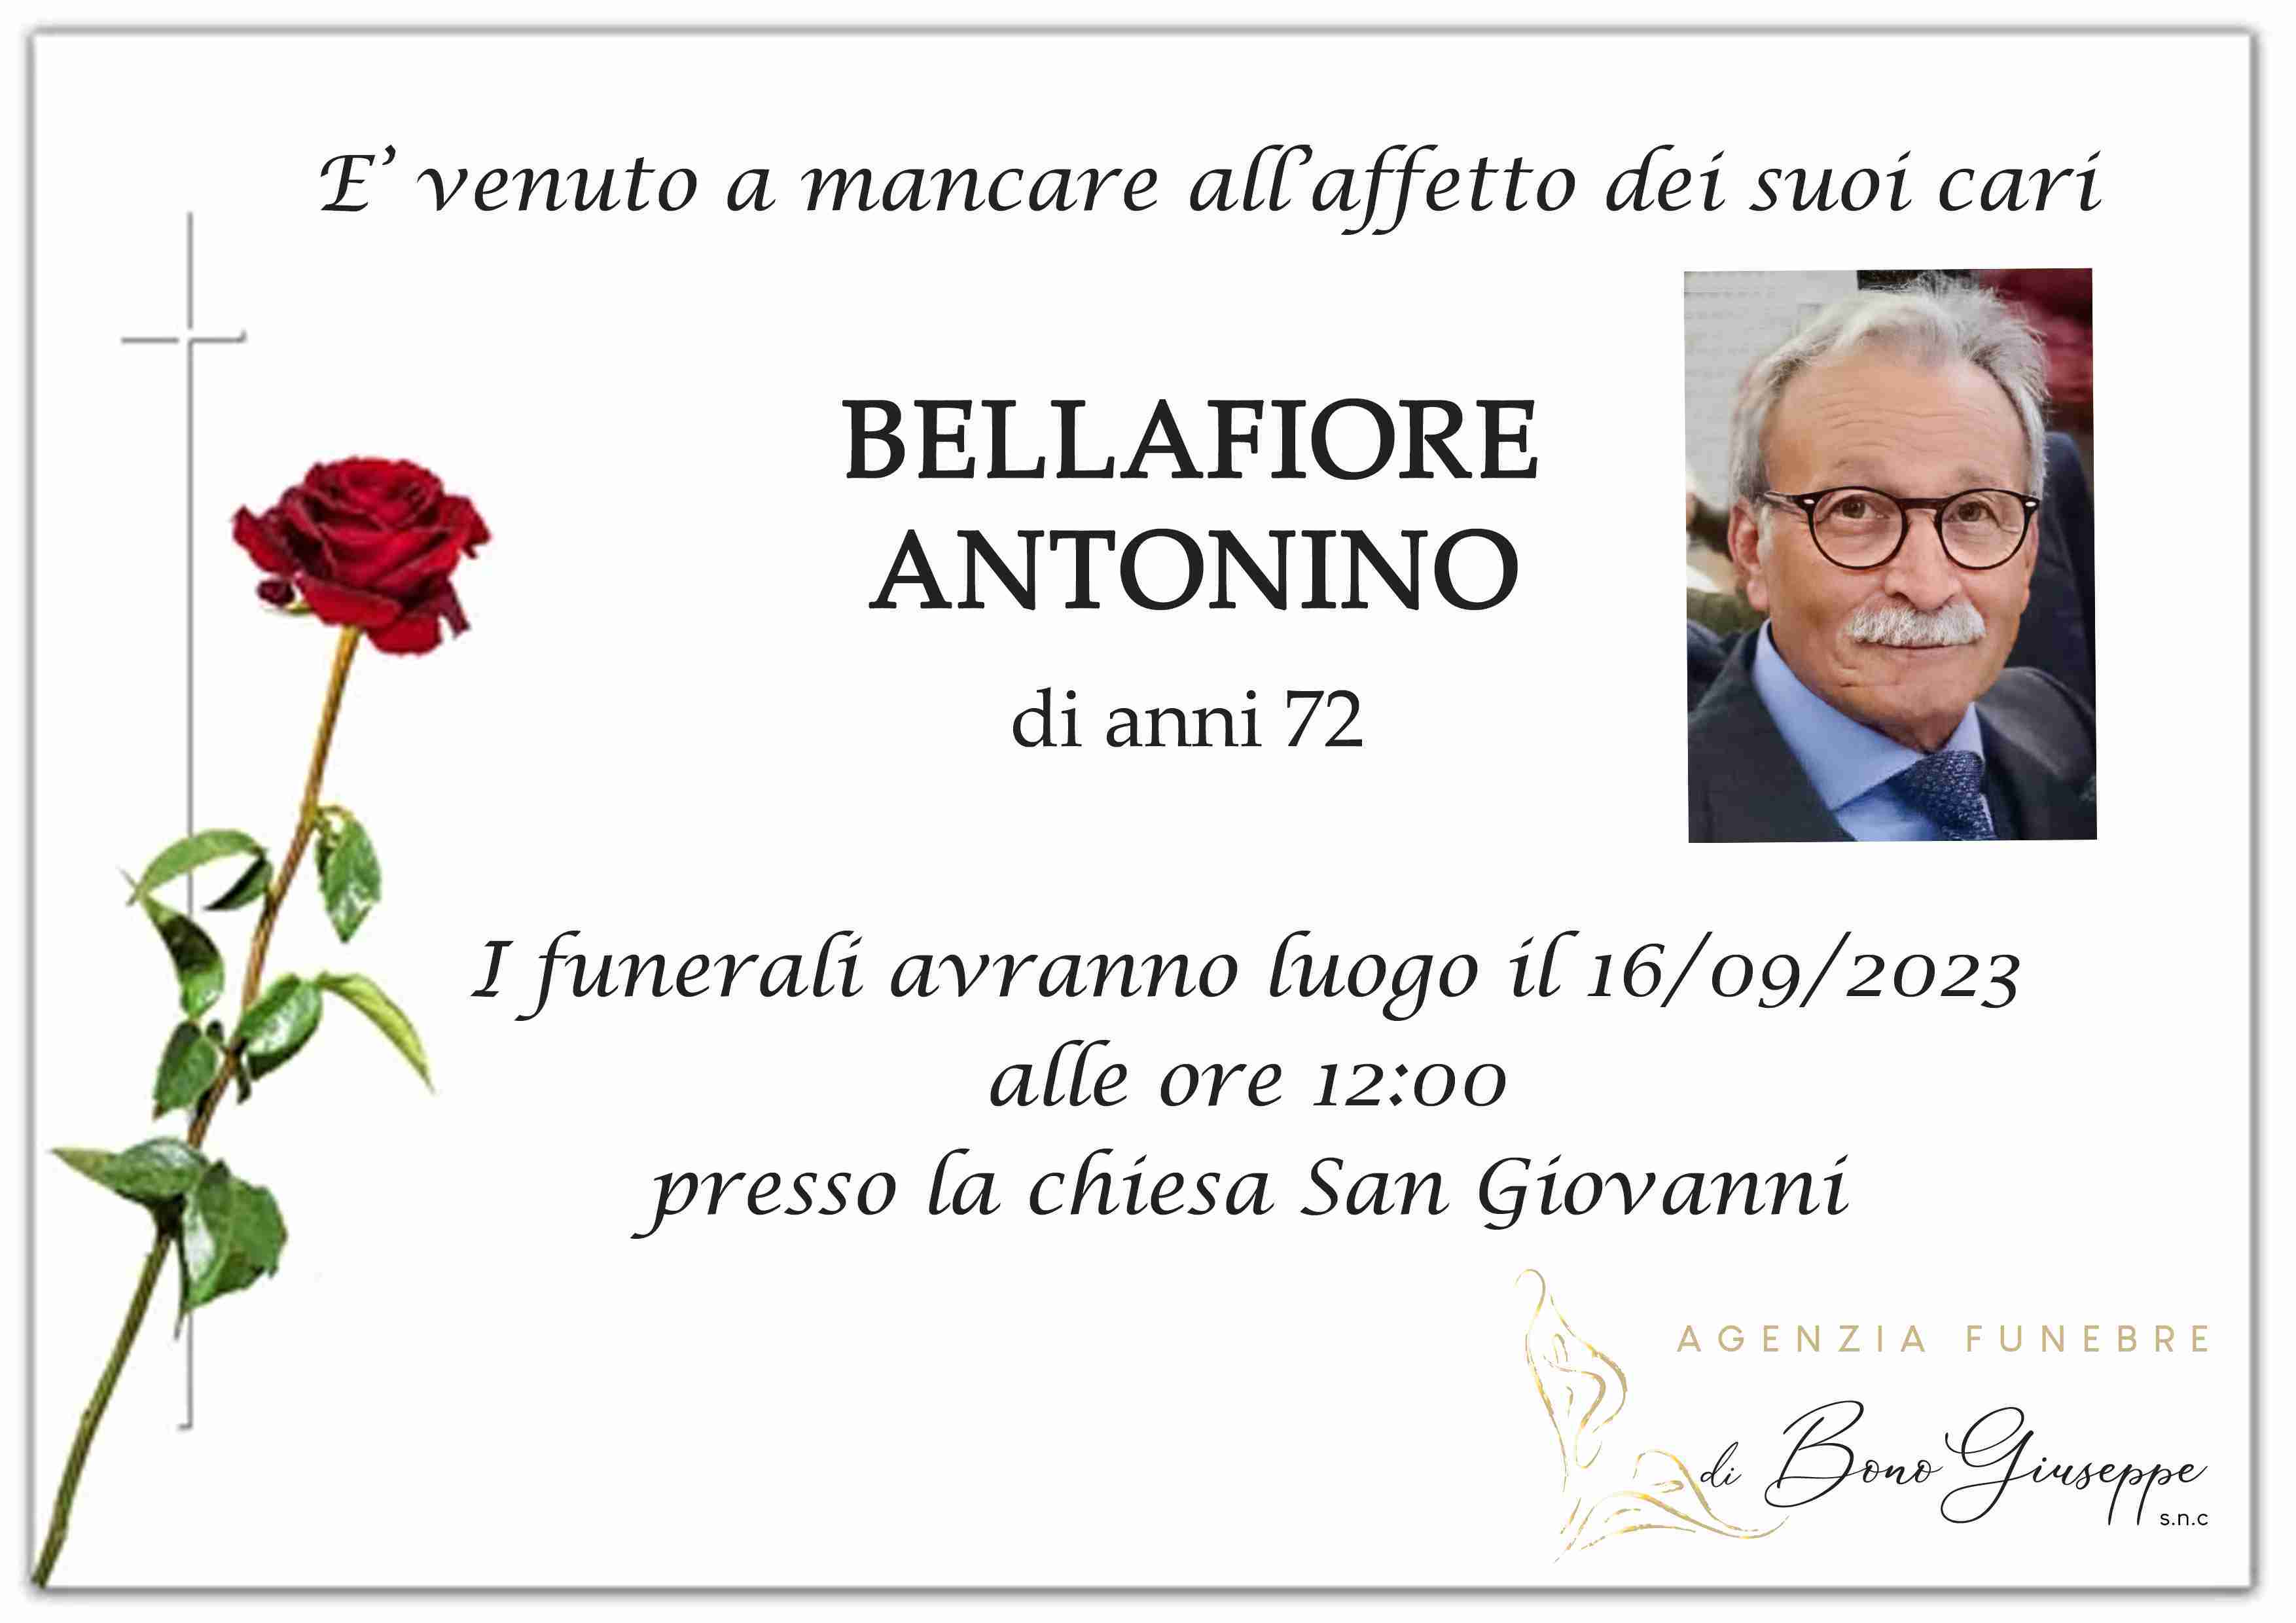 Antonino Bellafiore